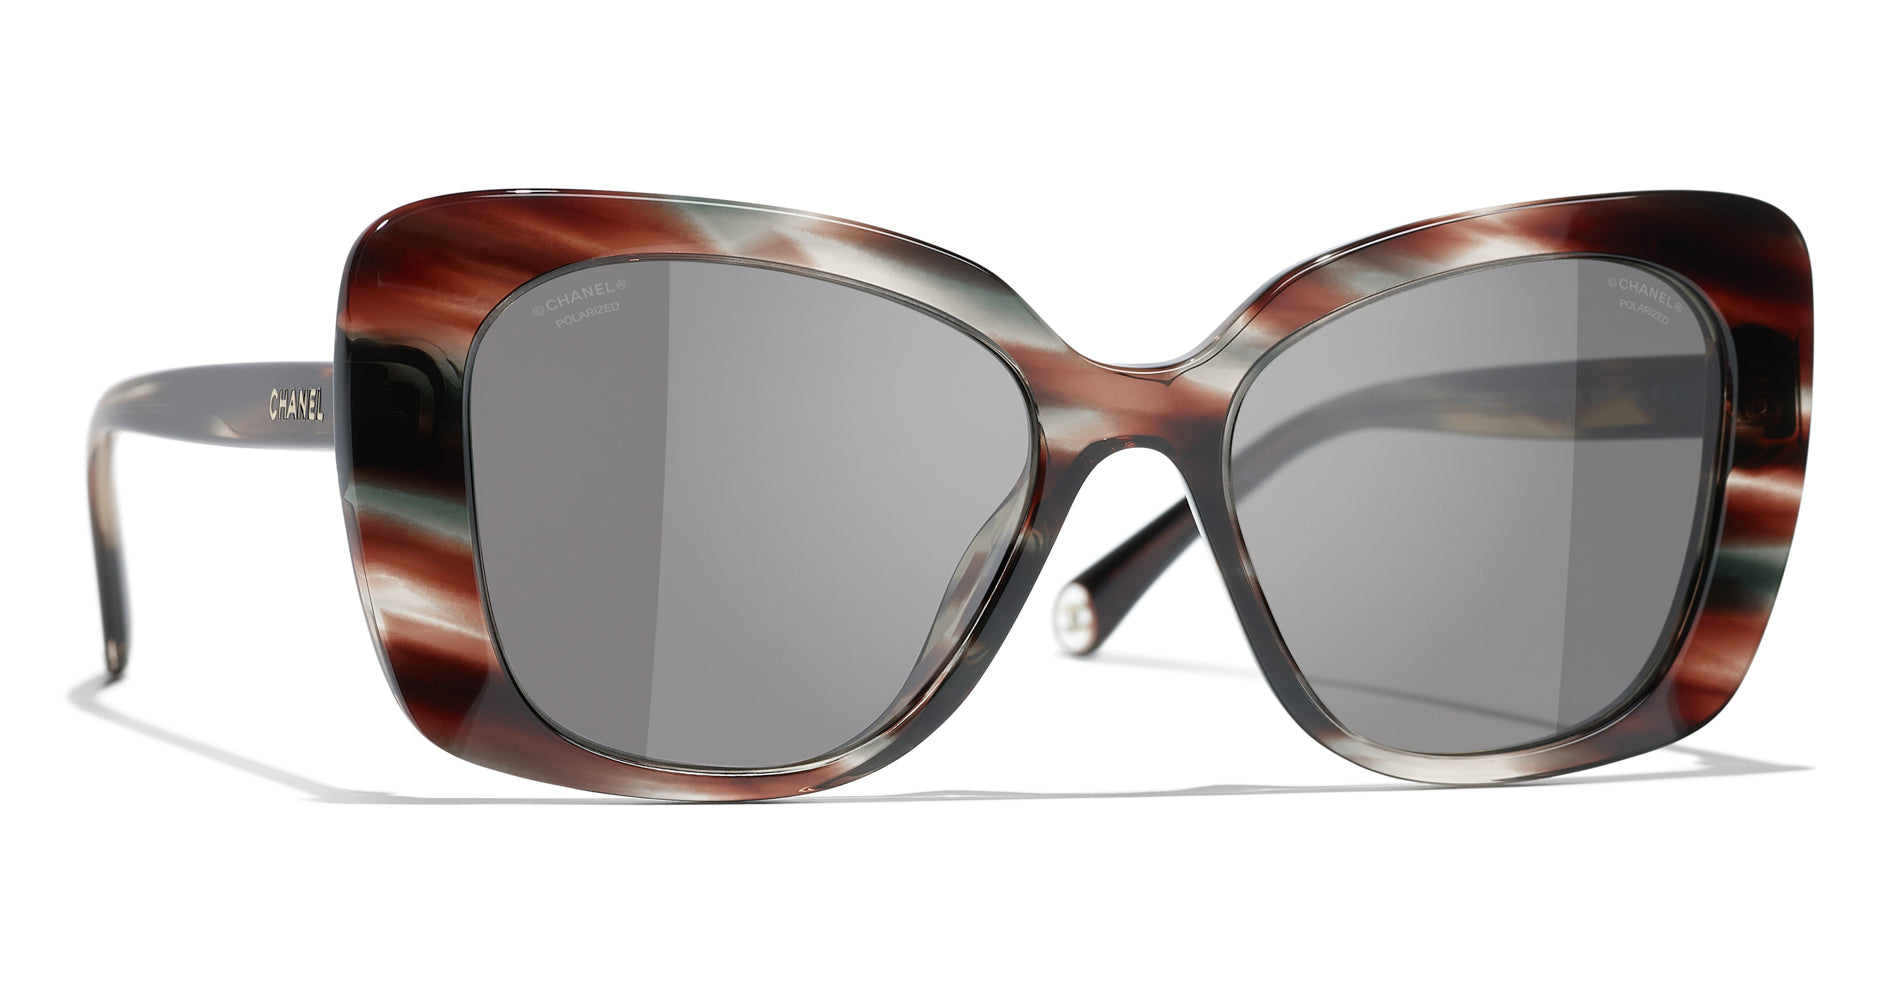 CHANEL Sunglasses Oversized Tortoise Shell Frame 5183 DESIGNER AUTHENTIC